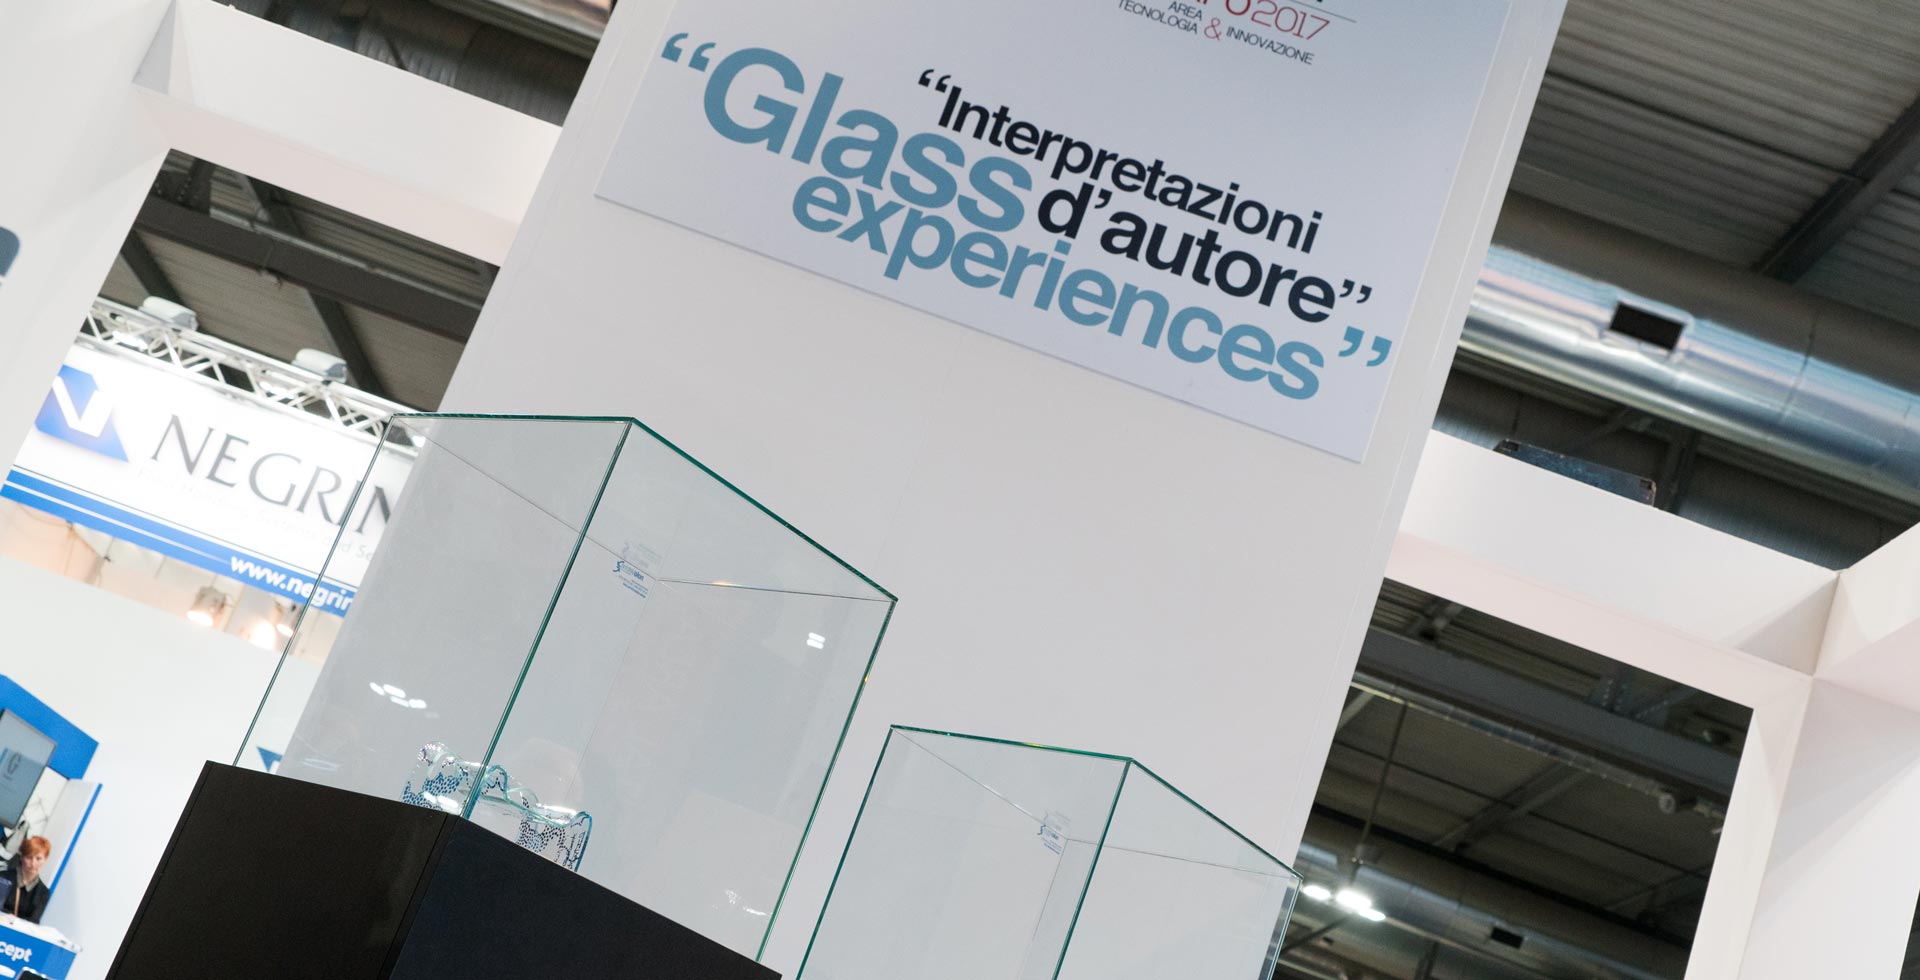 Interpretazioni d’autore, the exhibition dedicated to glass transformation at Vitrum 2017